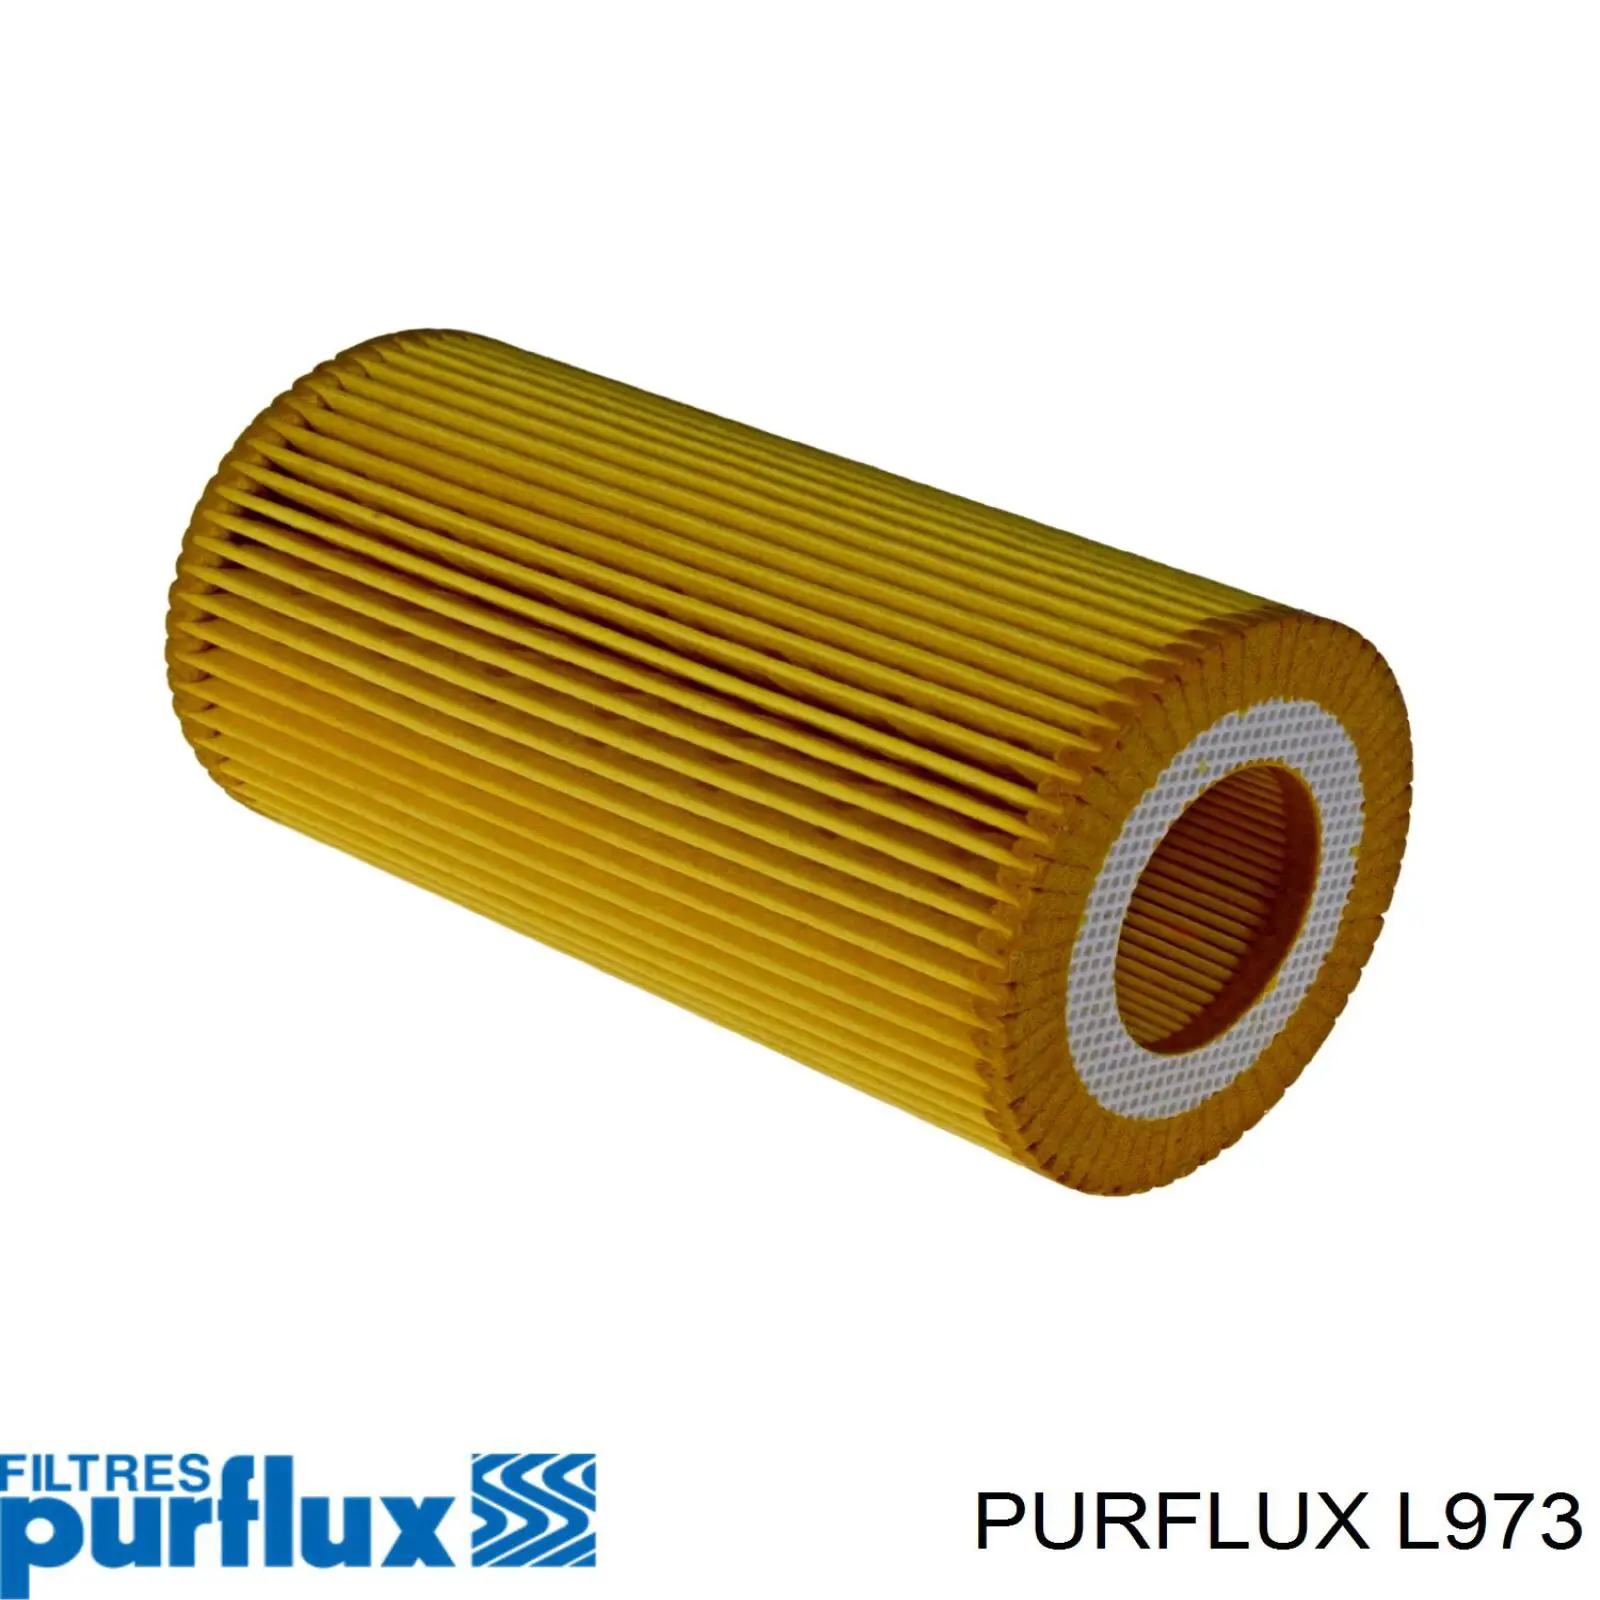 L973 Purflux filtro de aceite